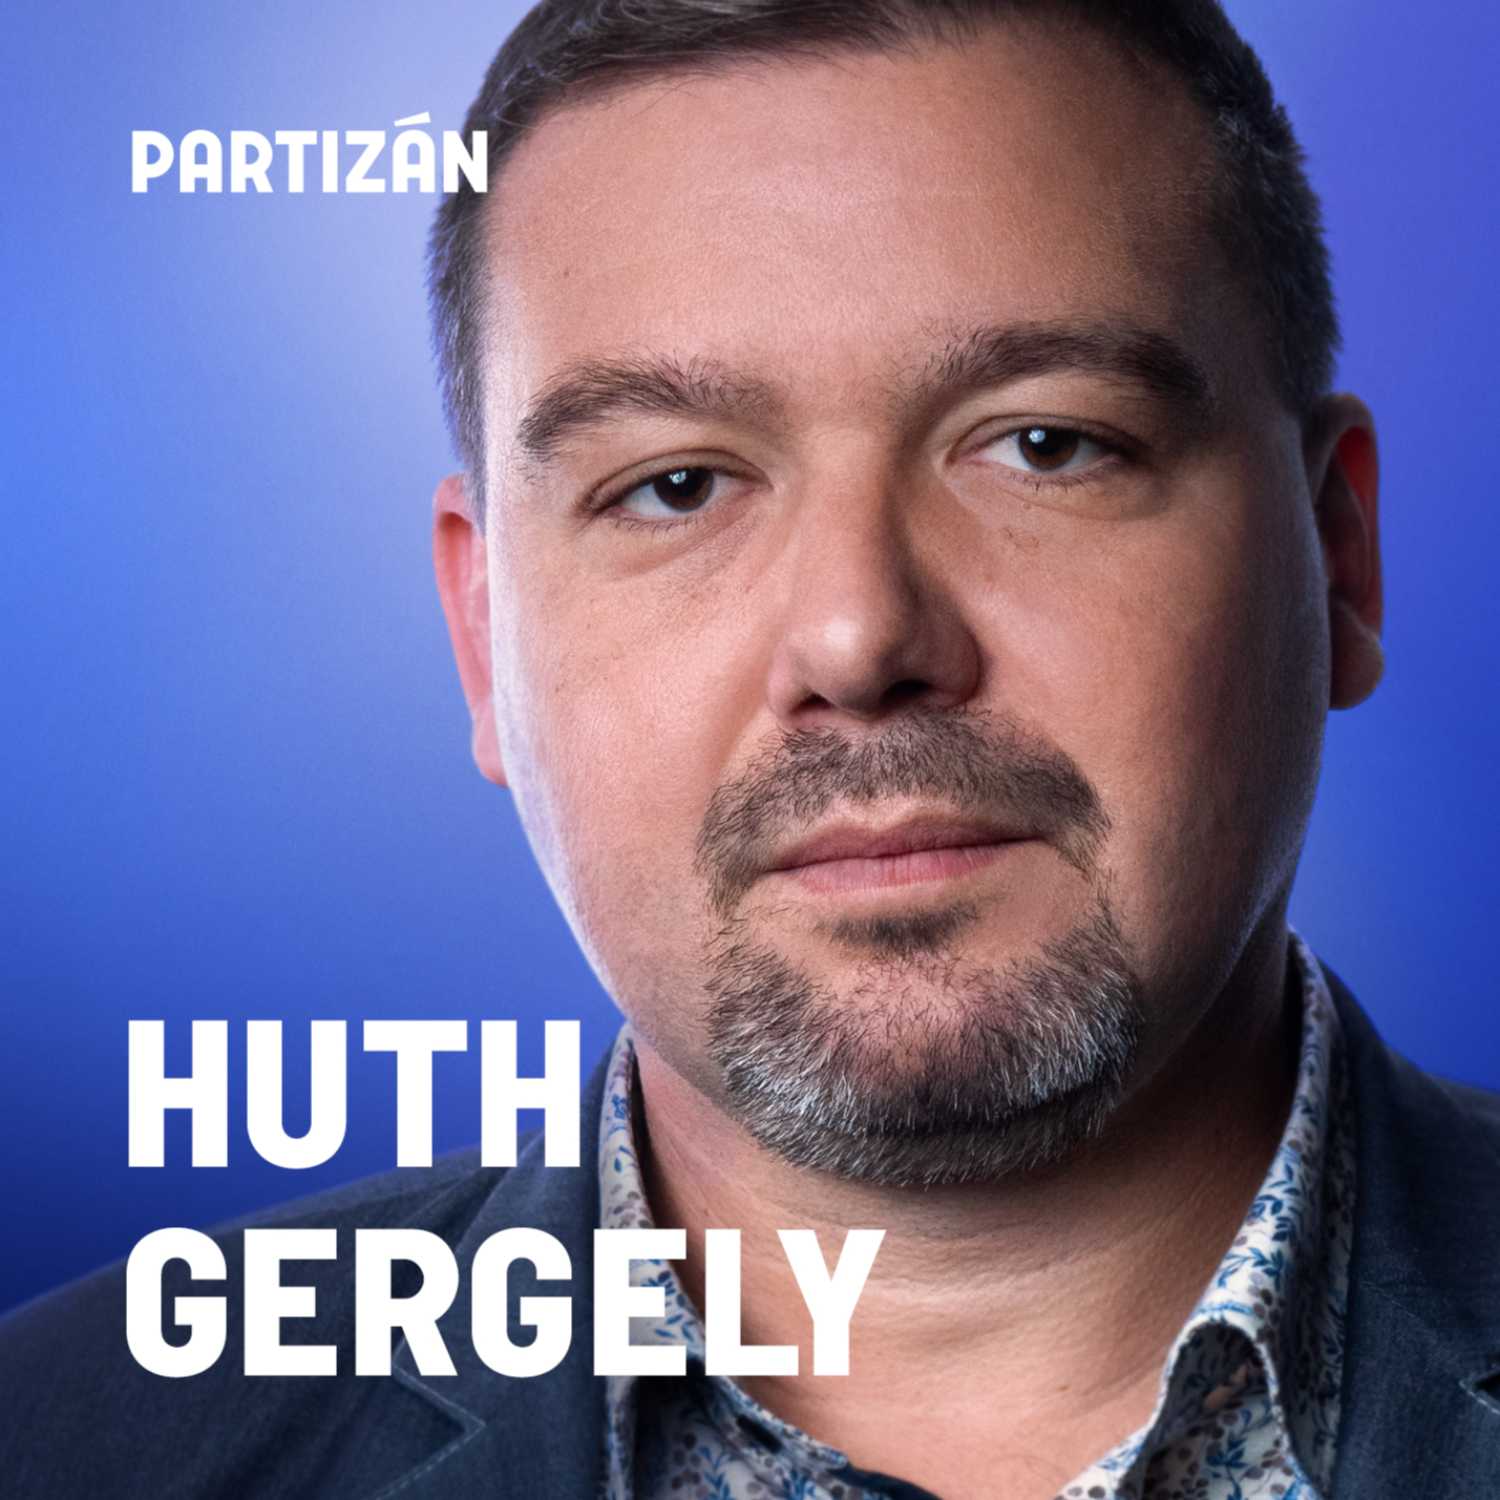 Huth Gergely: Nem tetszik, amit csinálunk? Ne olvassanak minket! | PartizánPOL